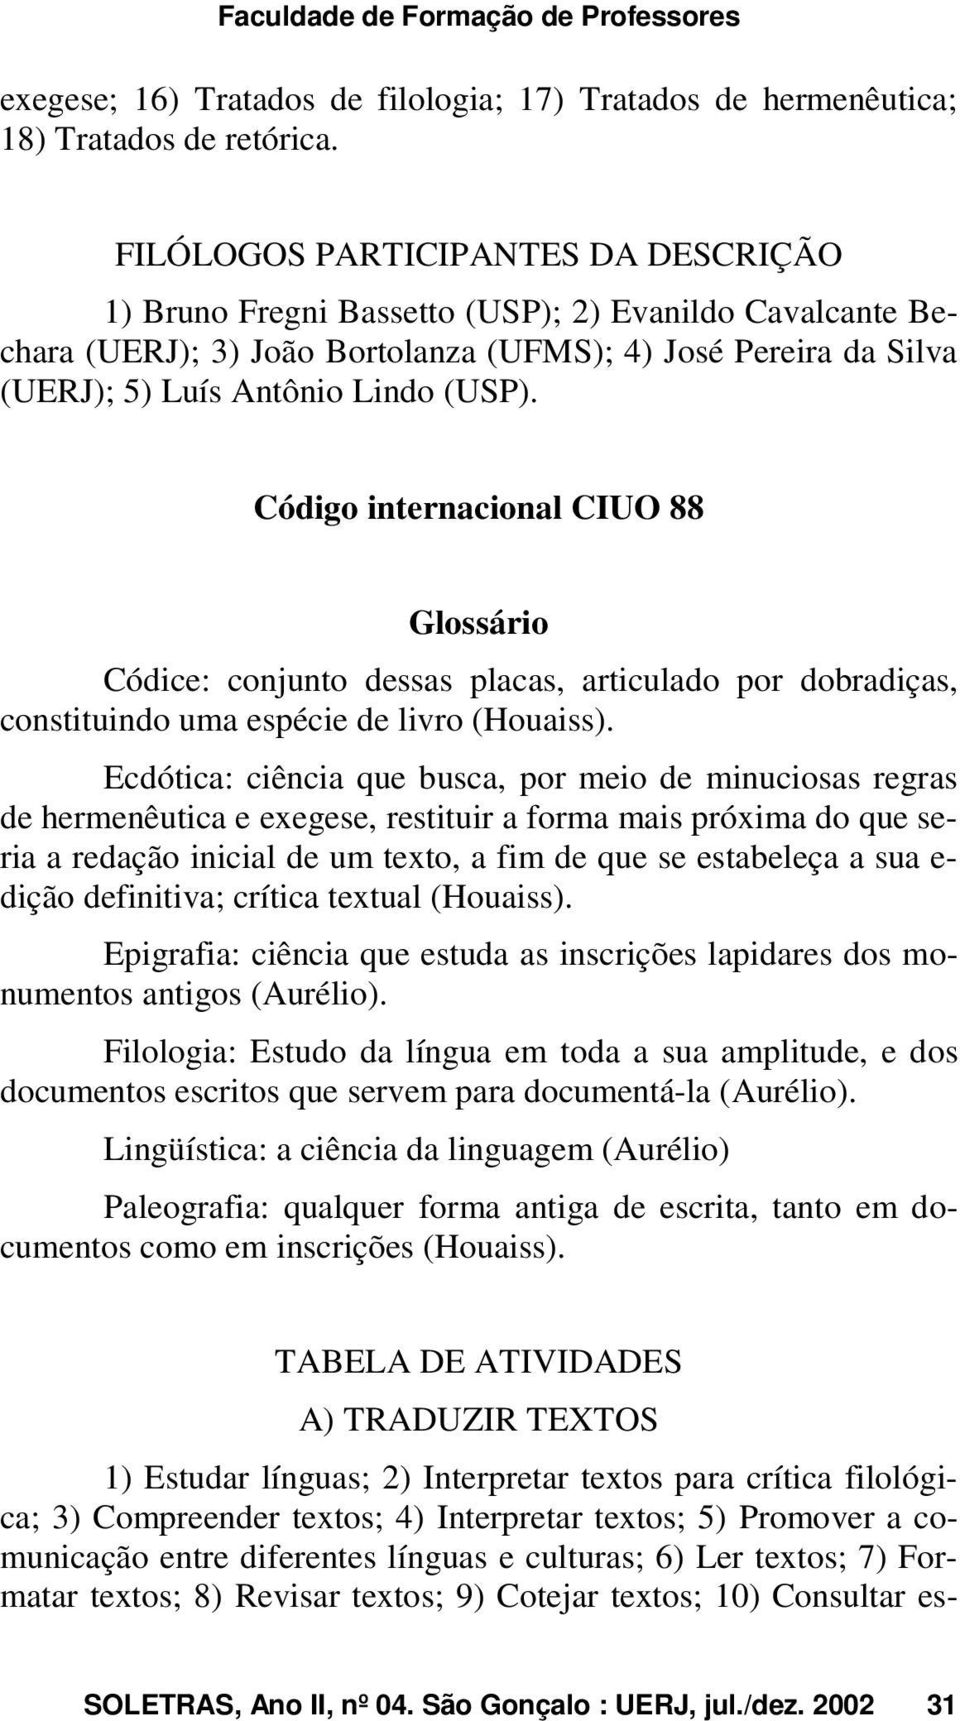 Código internacional CIUO 88 Glossário Códice: conjunto dessas placas, articulado por dobradiças, constituindo uma espécie de livro (Houaiss).